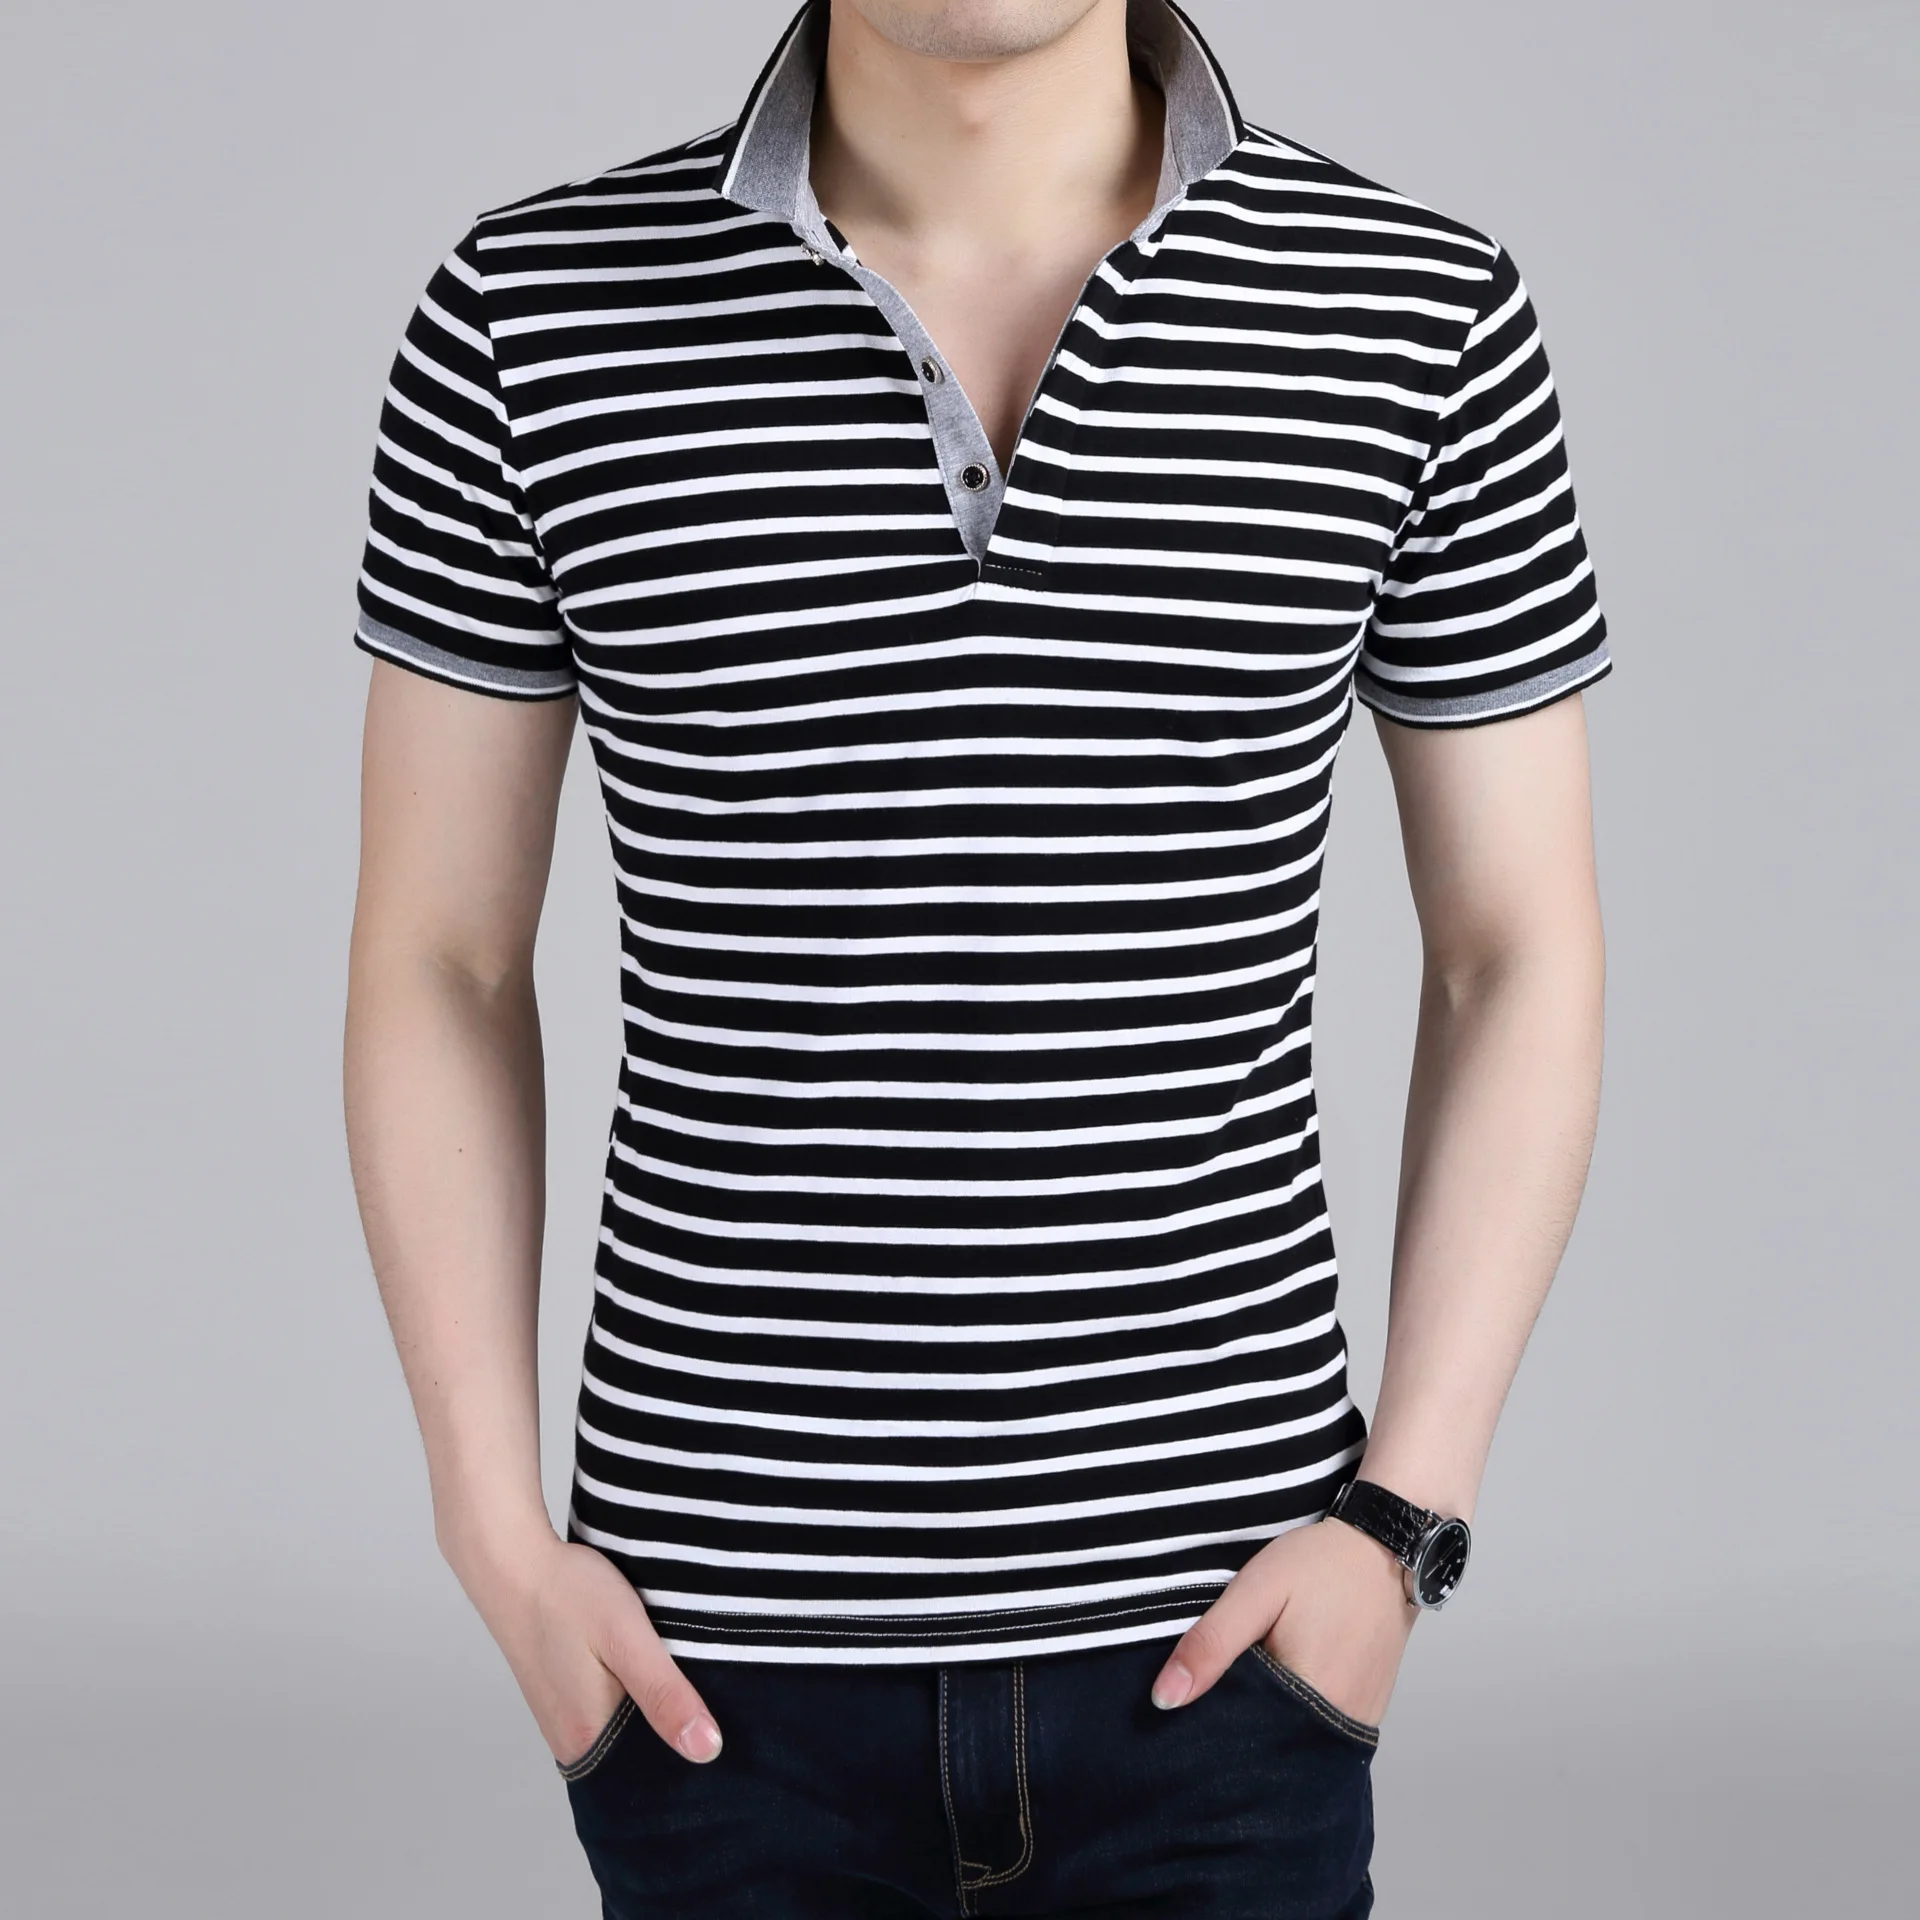 Новая модная летняя стильная короткая рубашка мужская повседневная хлопковая рубашка в полоску с коротким рукавом Размер XL